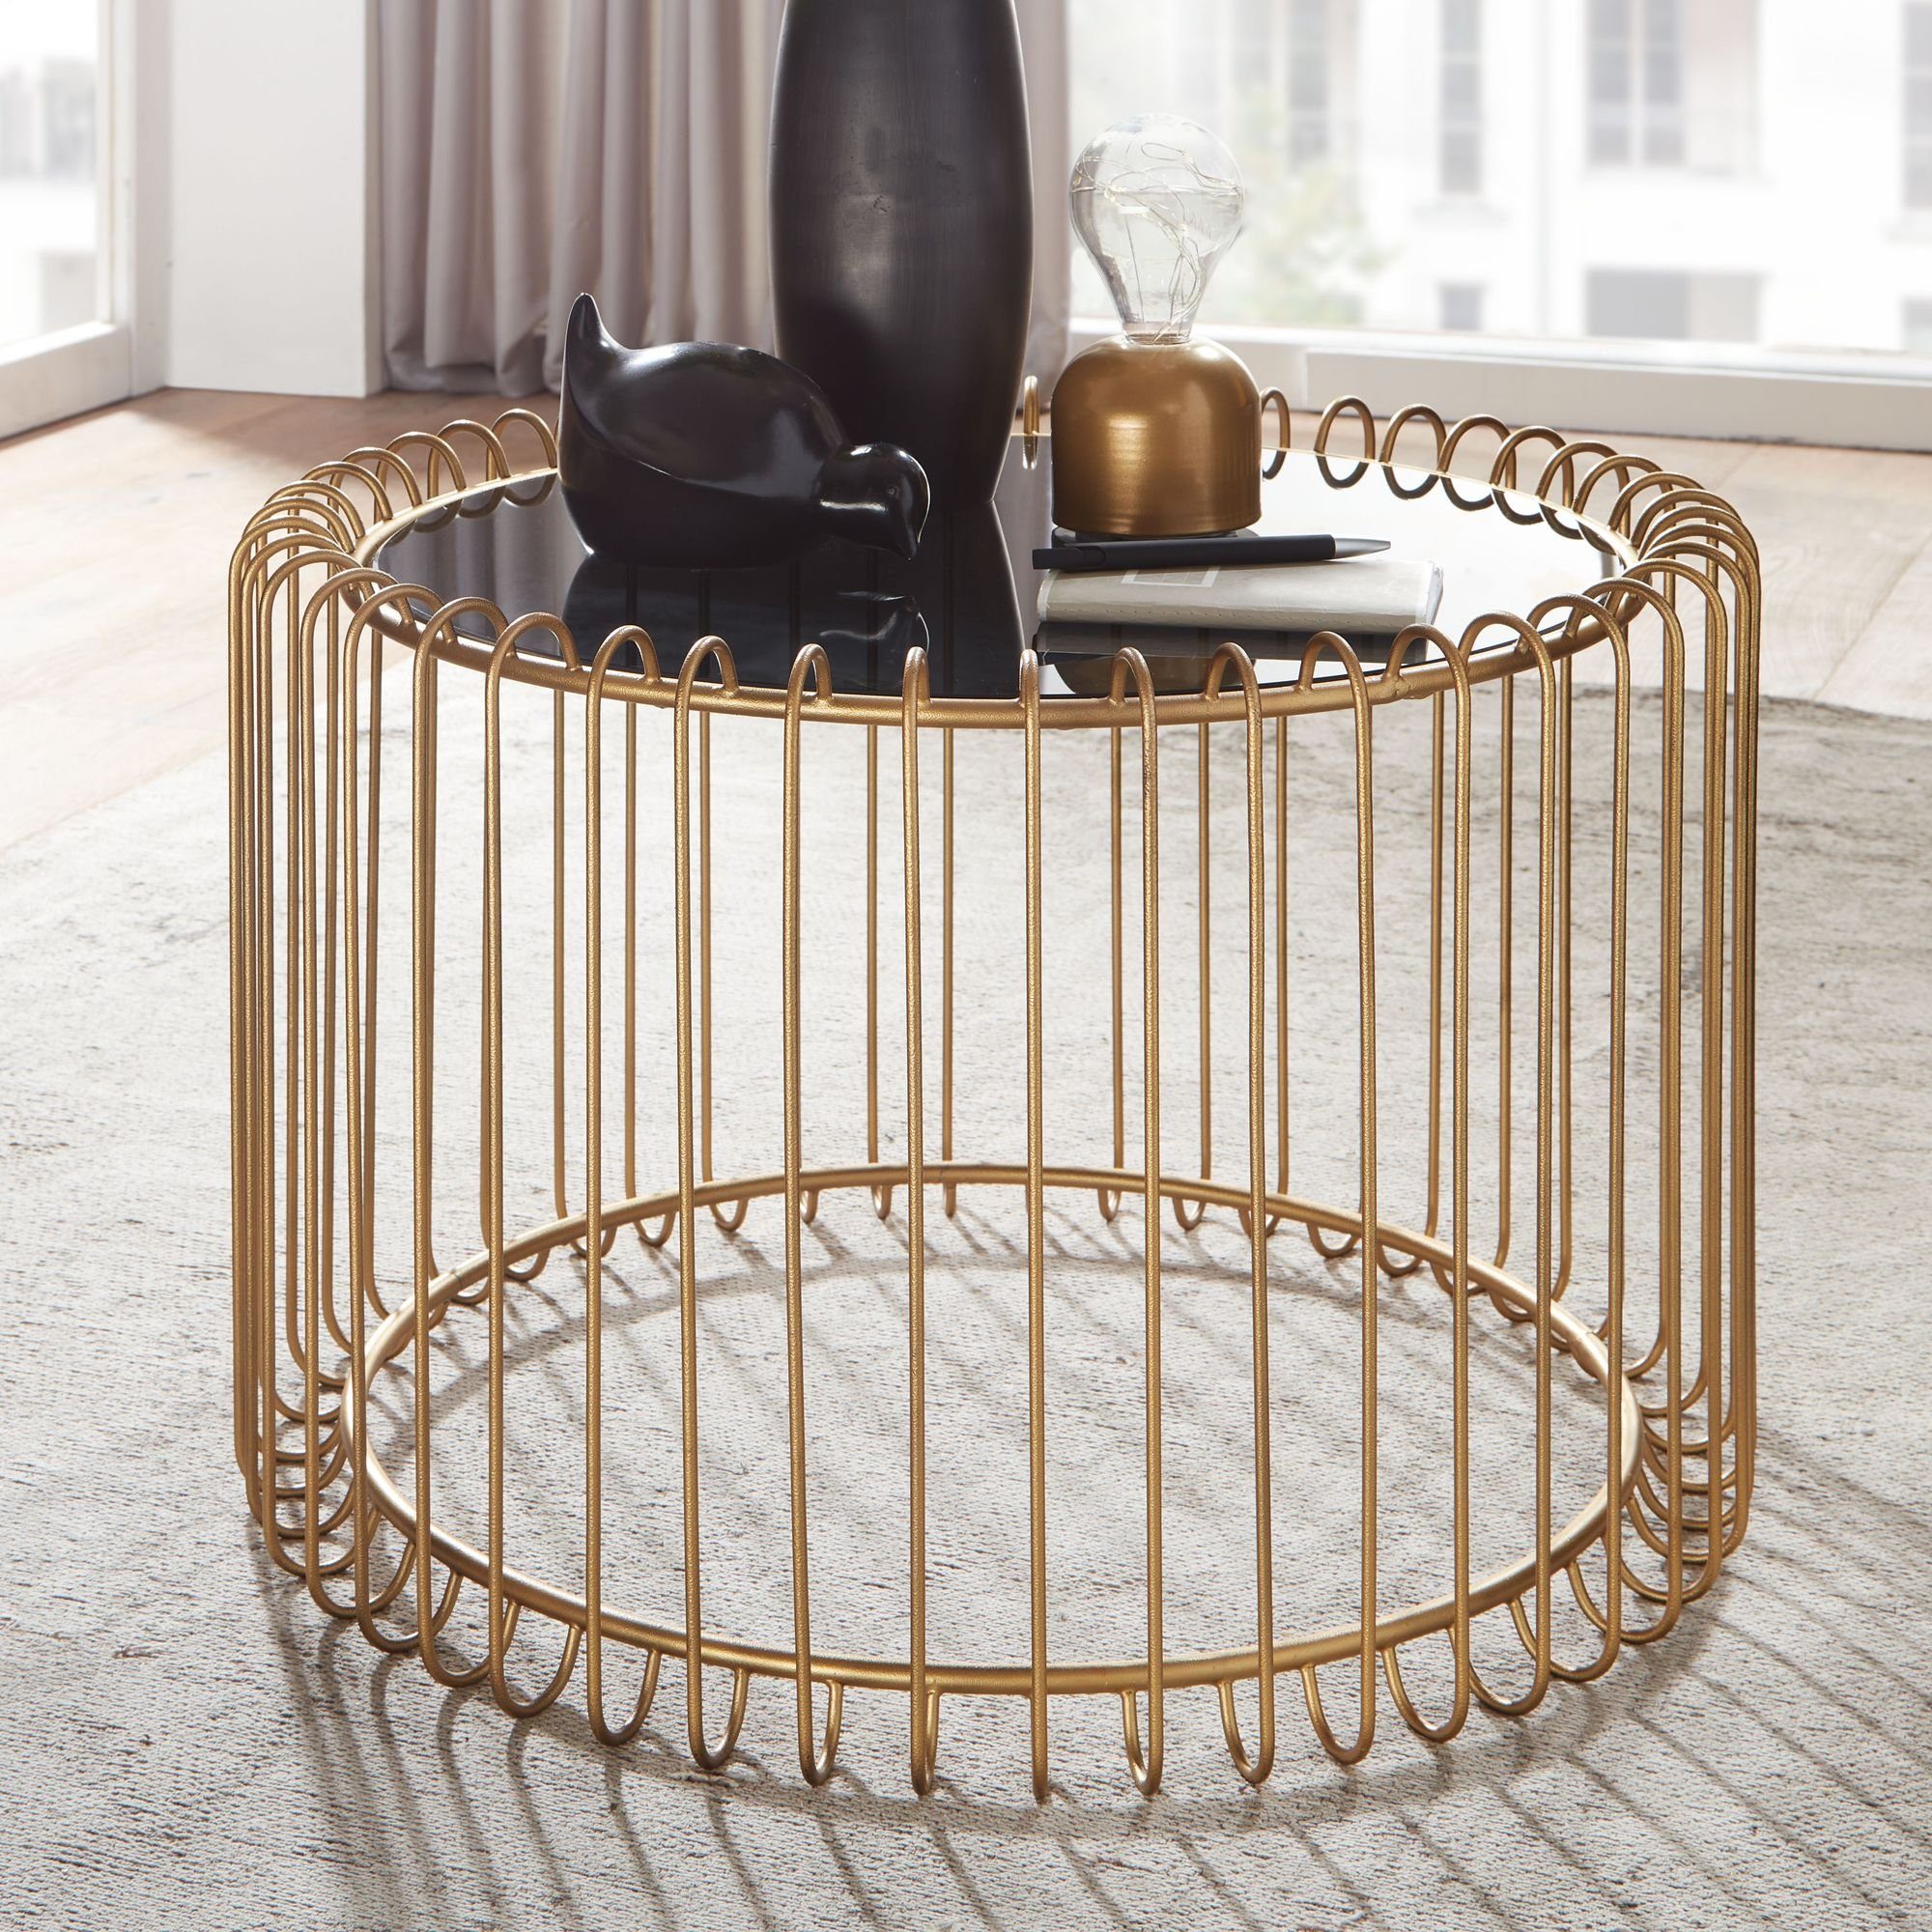 Glastisch Gold | mit Couchtisch KADIMA viel Gold Design, Ablagefläche DESIGN Metallgestell, Modernes